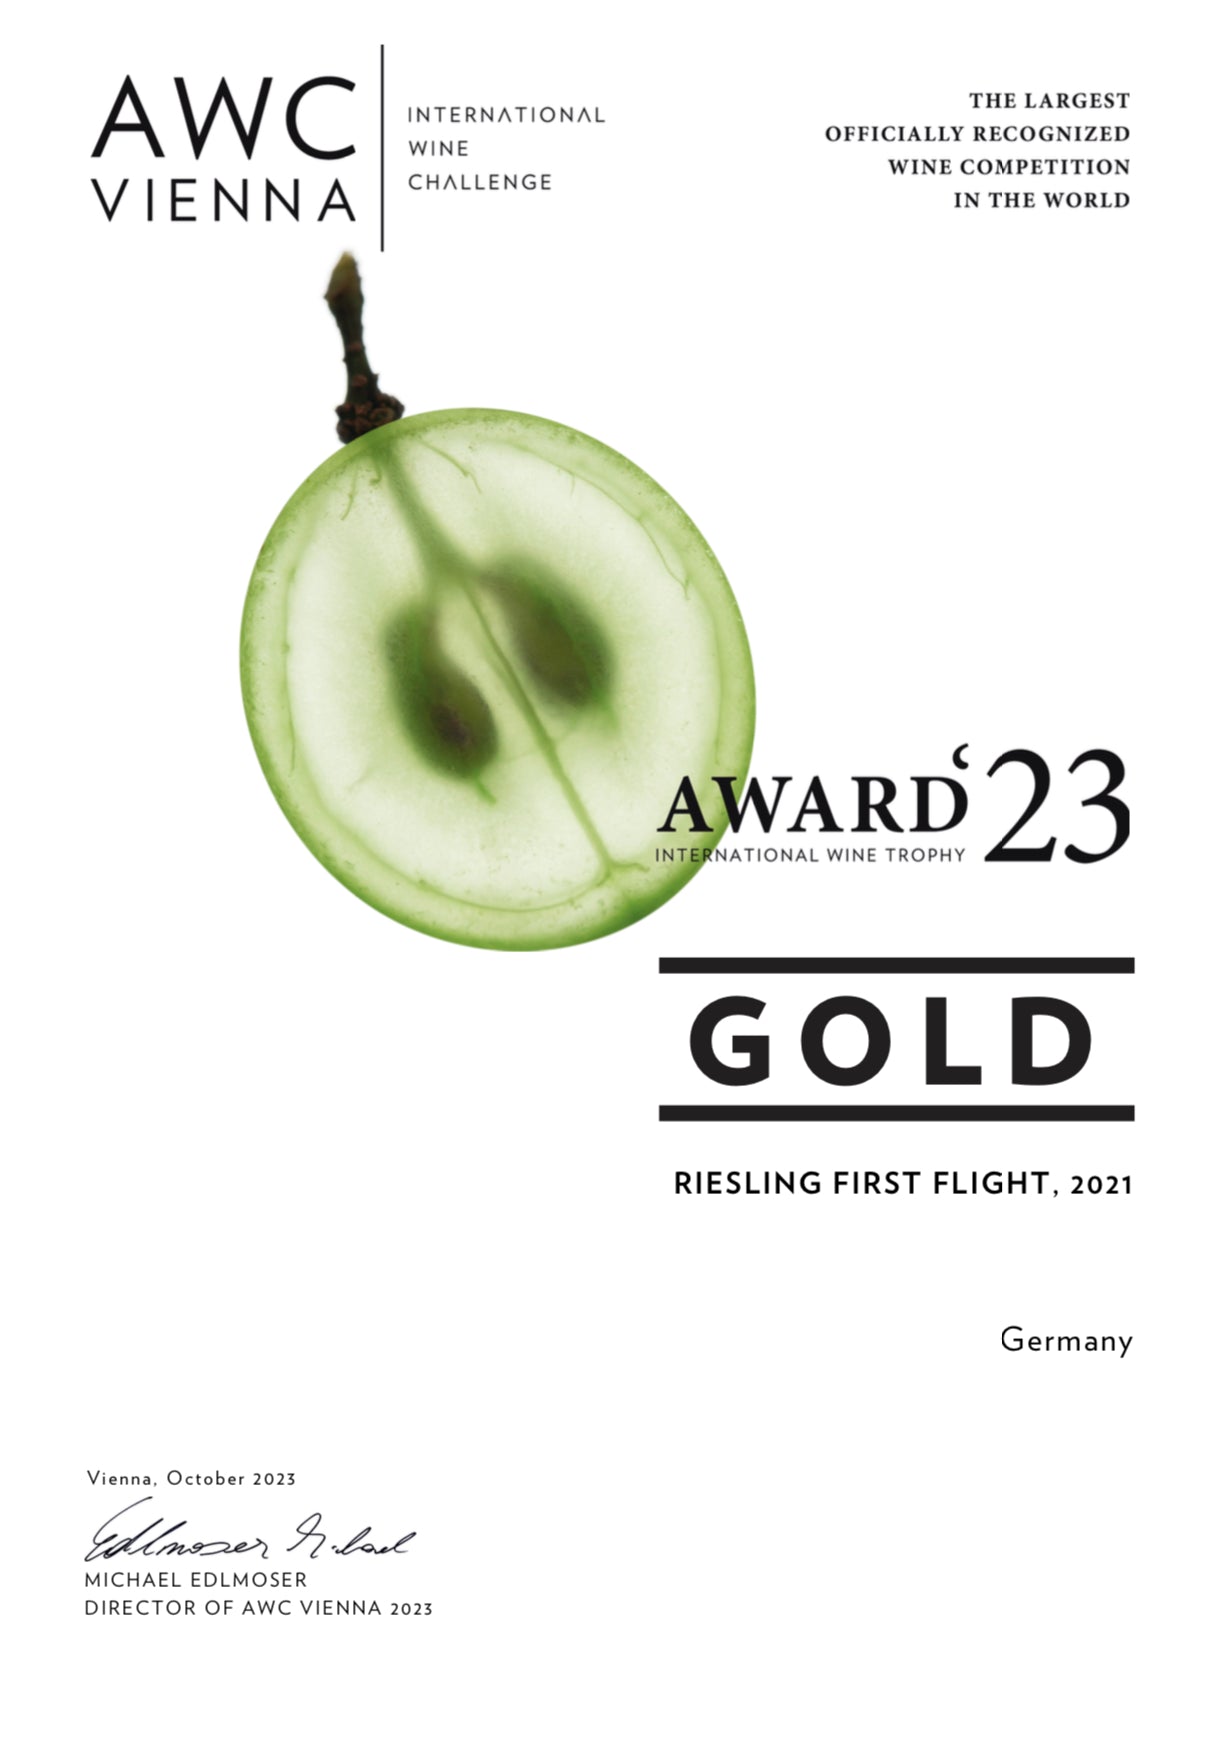 Doppelt-Gold beim internationalen Weinwettbewerb AWC für LUKAS SCHMIDT - Lukas Schmidt Wein